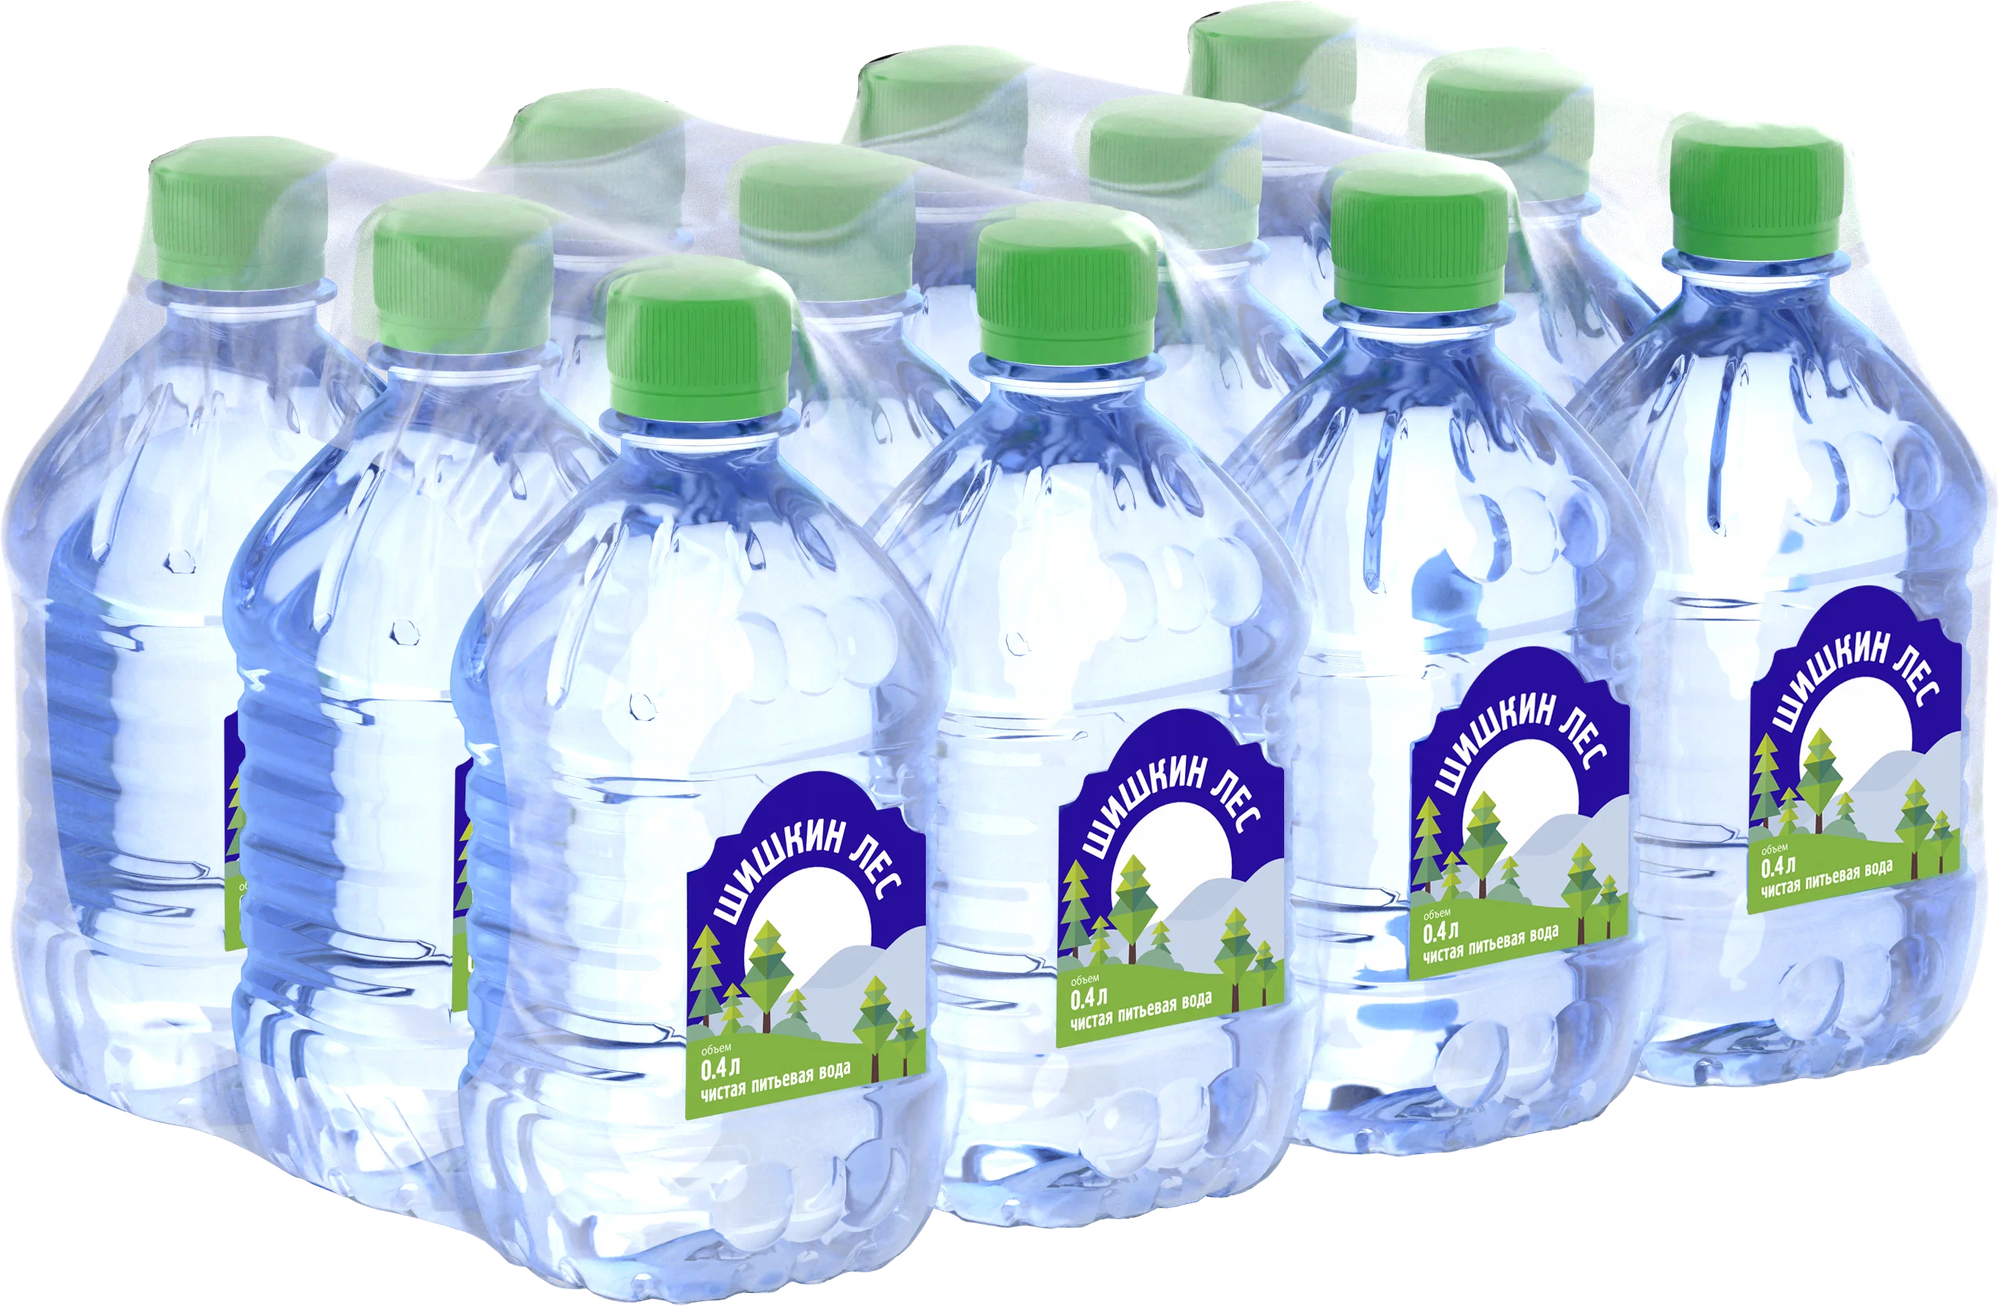 Питьевая вода Шишкин лес негазированная 0.4 л. ПЭТ упаковка 12 штук